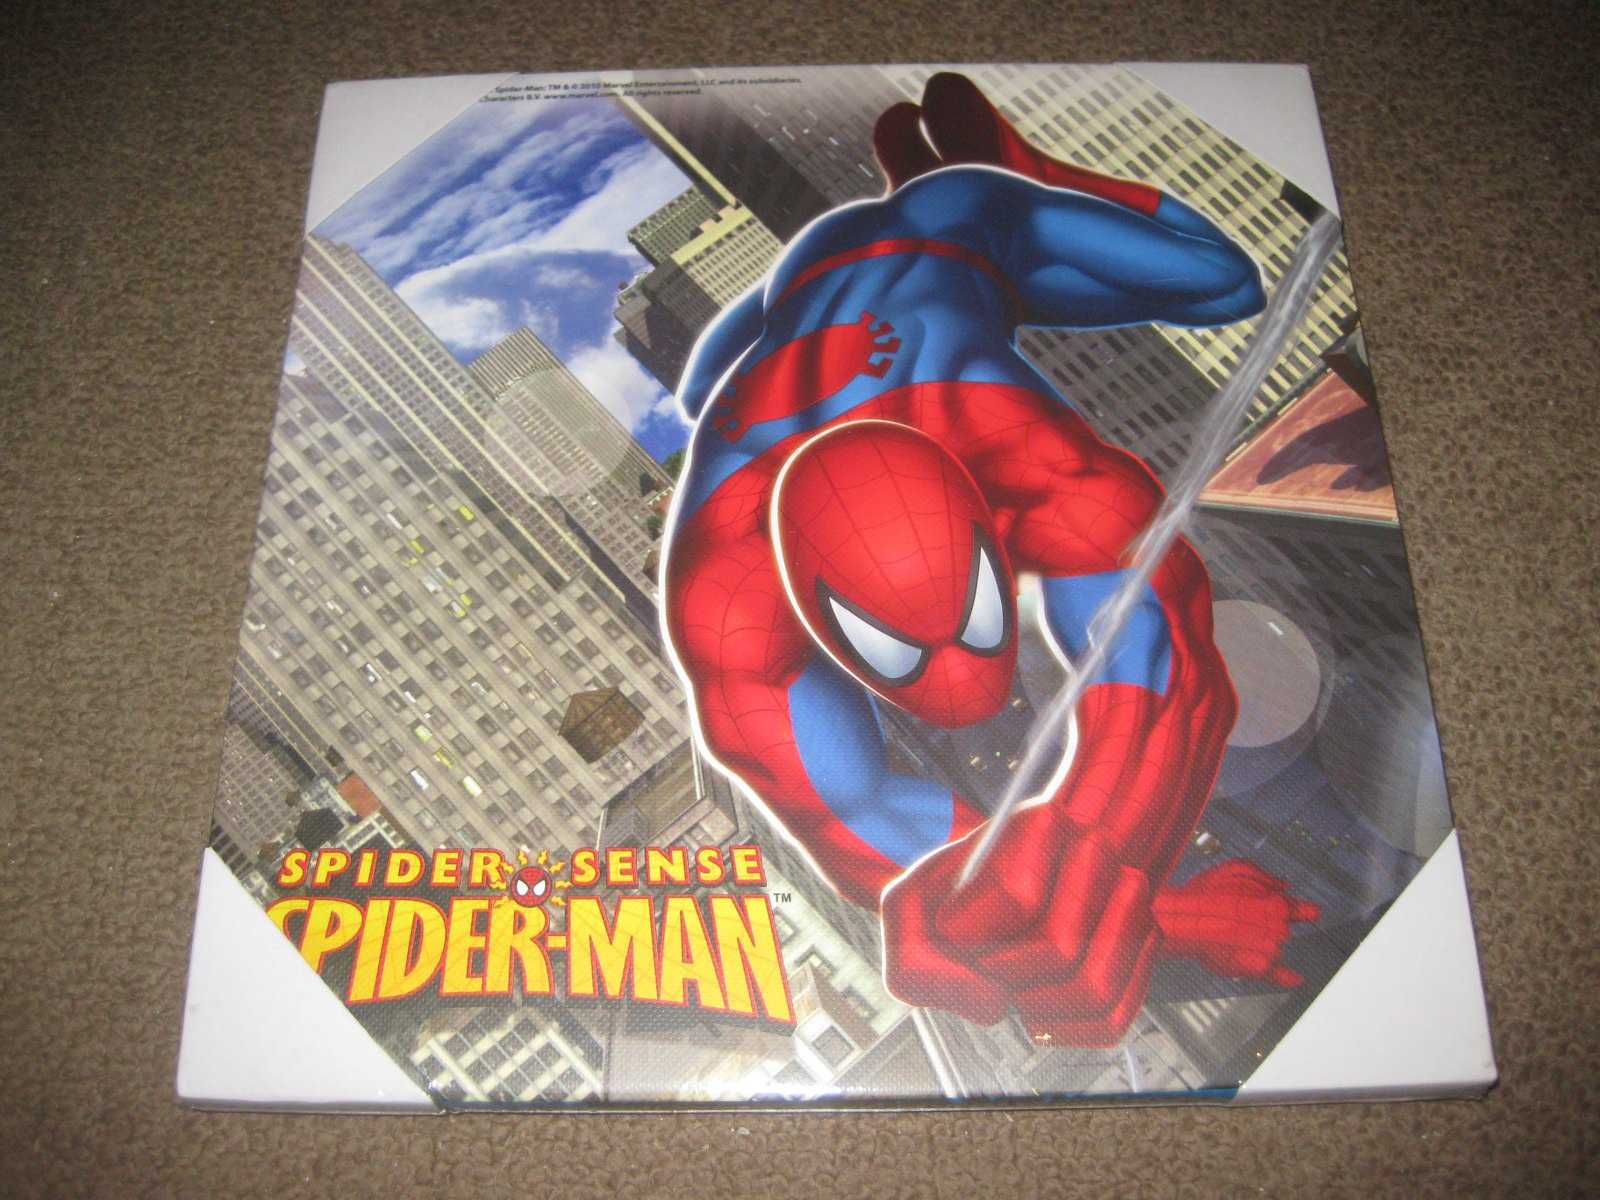 4 Quadros/Telas do "Homem Aranha (Spider Man)" Novos e Embalados!